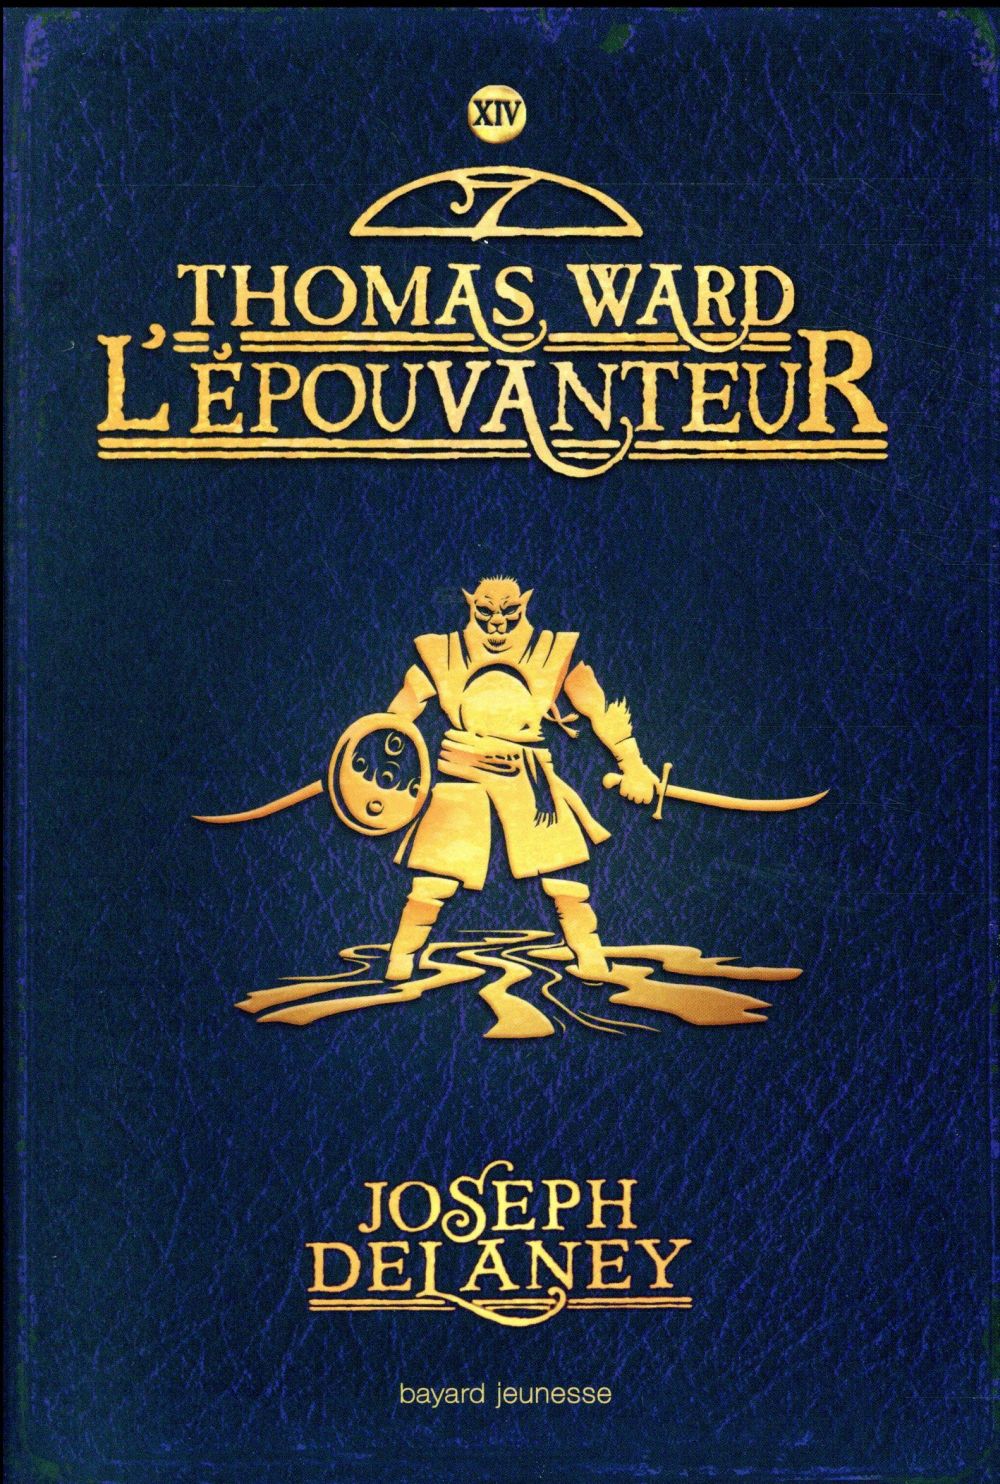 L'EPOUVANTEUR, TOME 14 - THOMAS WARD L'EPOUVANTEUR